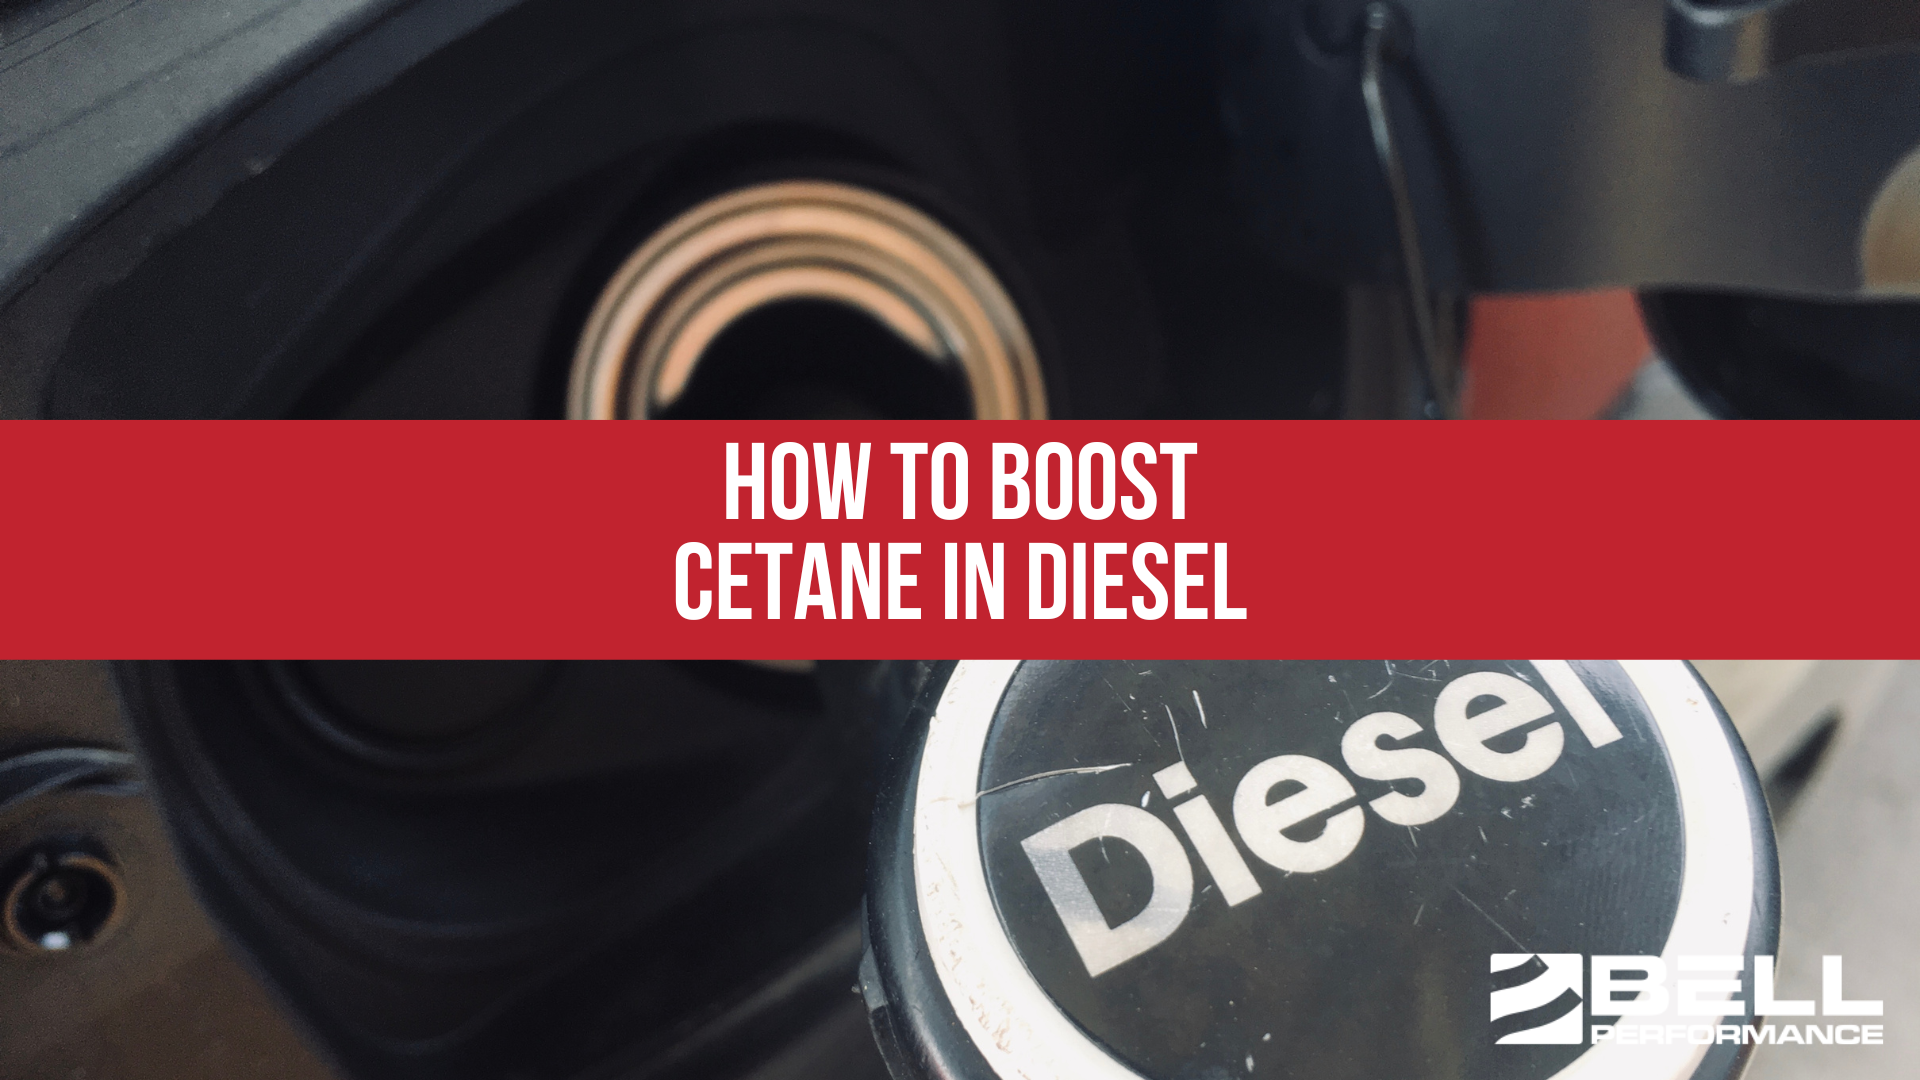 How to Boost Cetane in Diesel